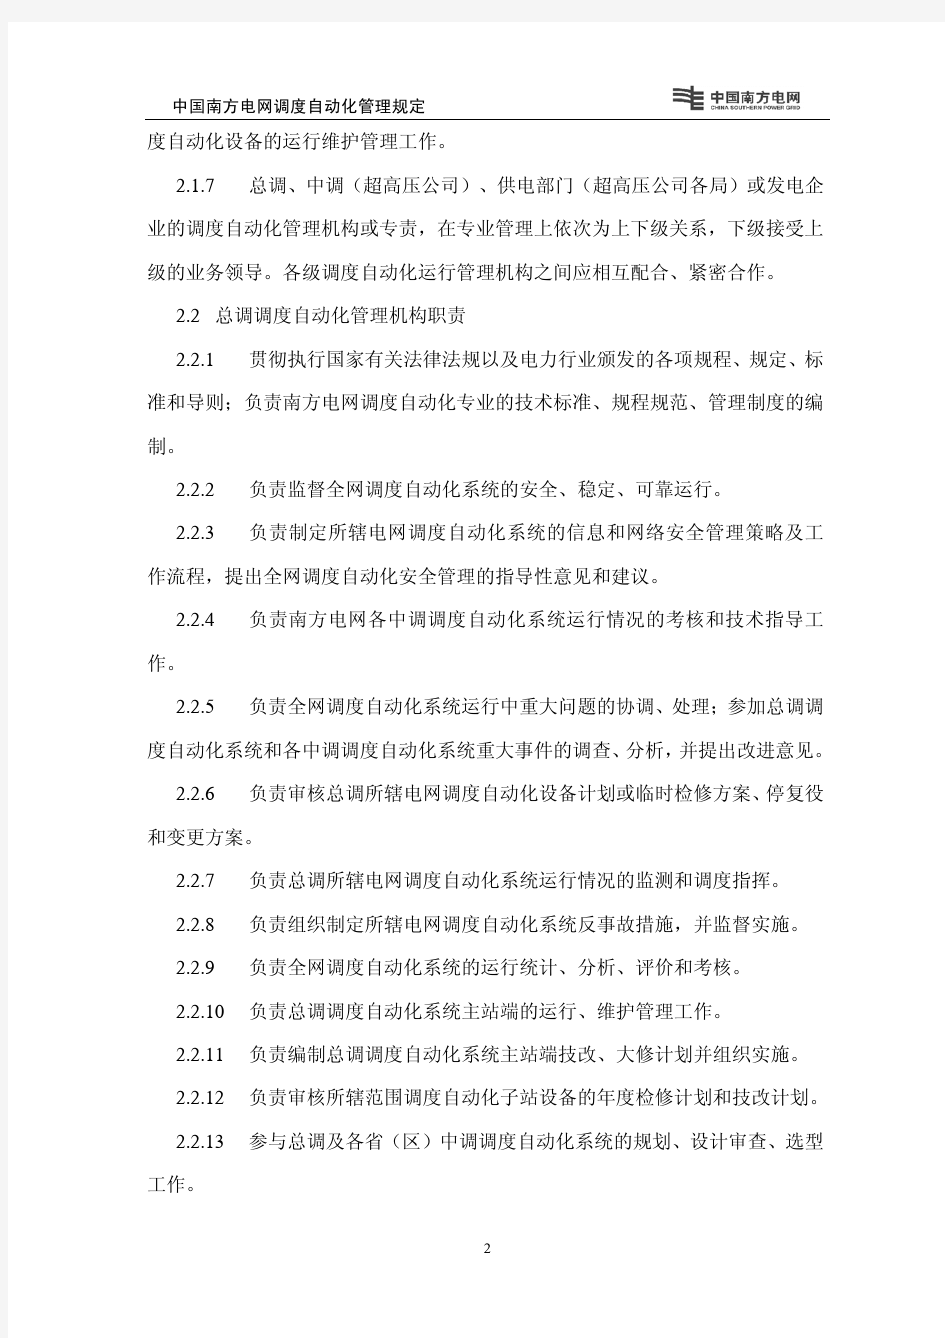 中国南方电网调度自动化管理规定